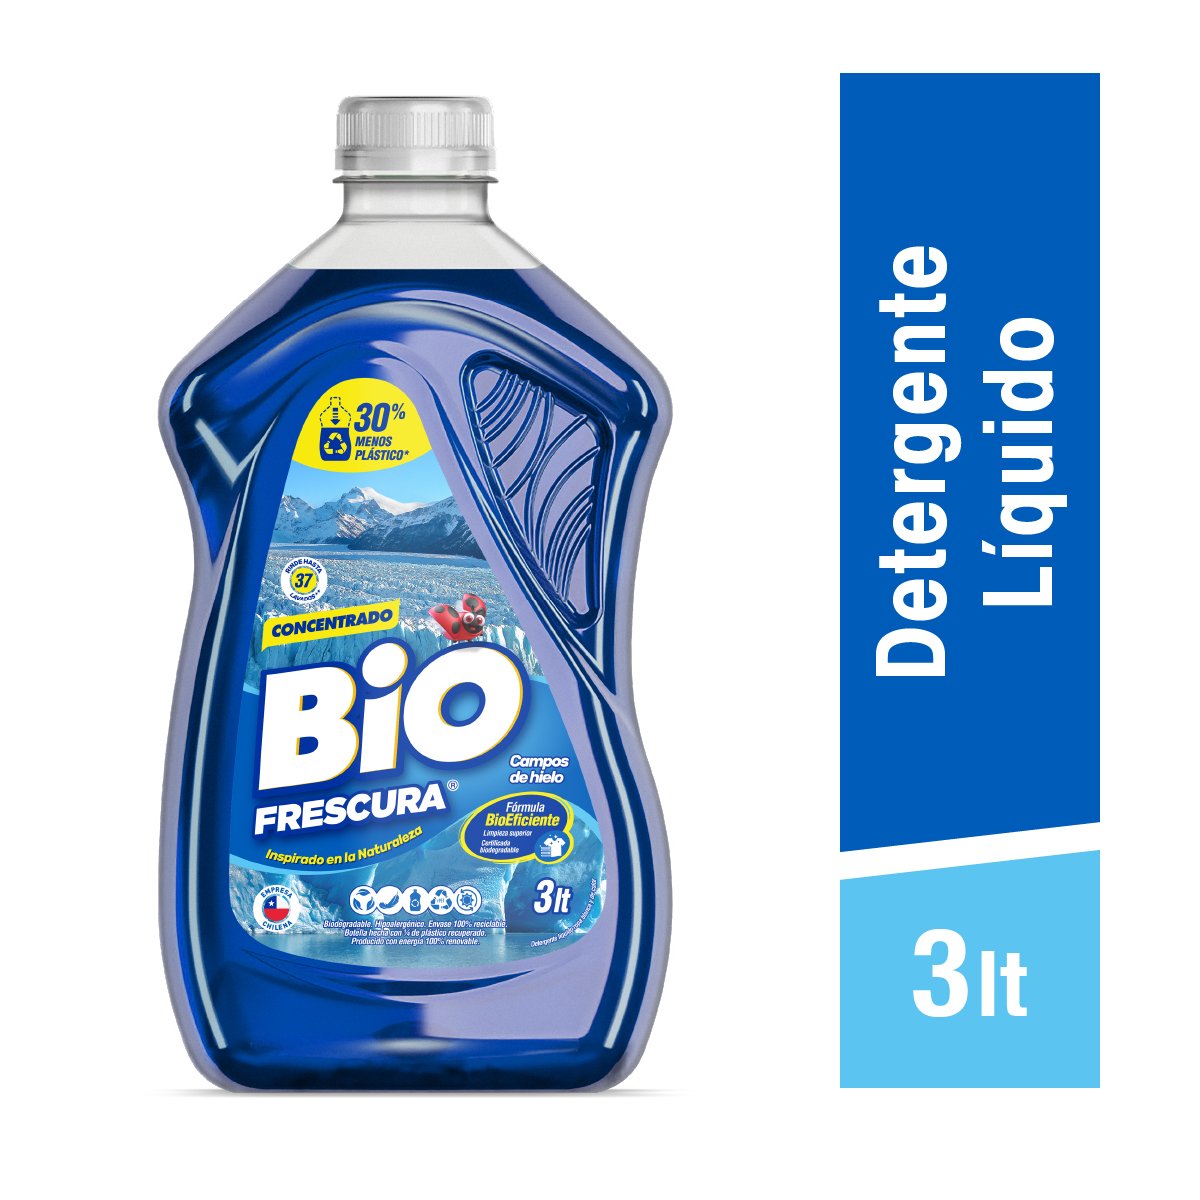 Comparar precios: Deterguente Líquido Campos De Hielo Botella - 3 LT - Biofrescura - ¿Cuánto Cuesta? ¿Dónde Comprar?